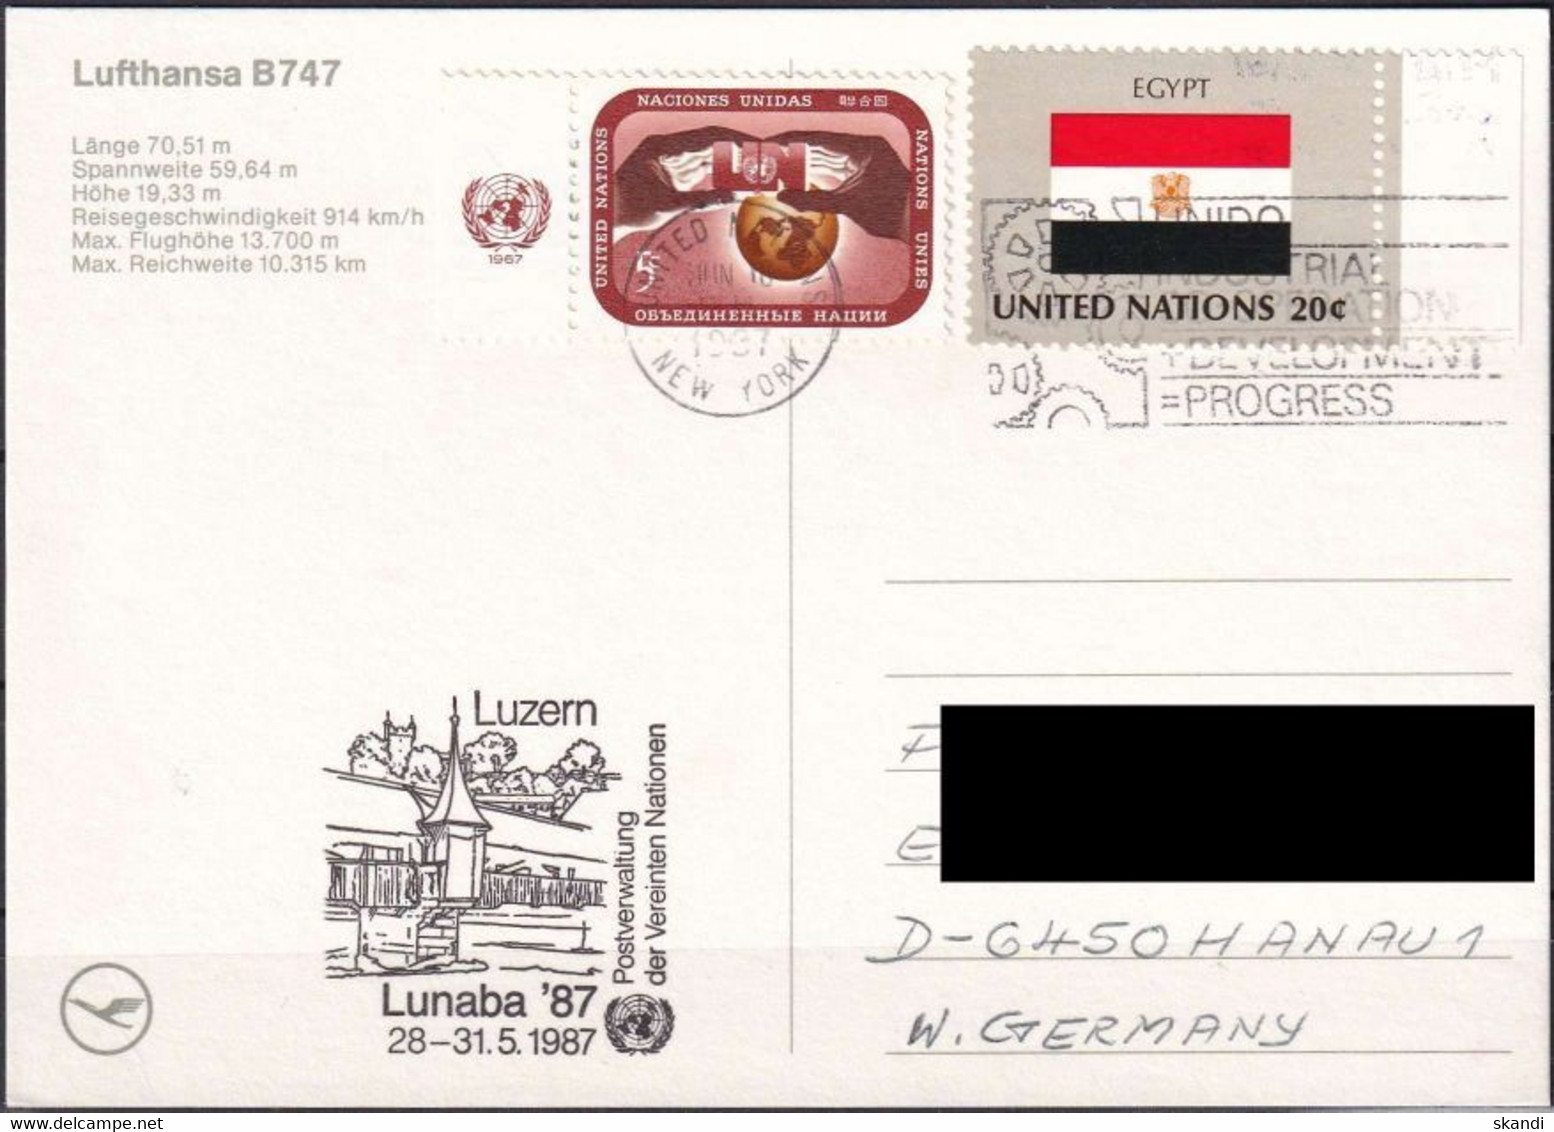 UNO NEW YORK 1987 Postkarte Lunaba'87 Lufthansa Boeing 747 - Briefe U. Dokumente